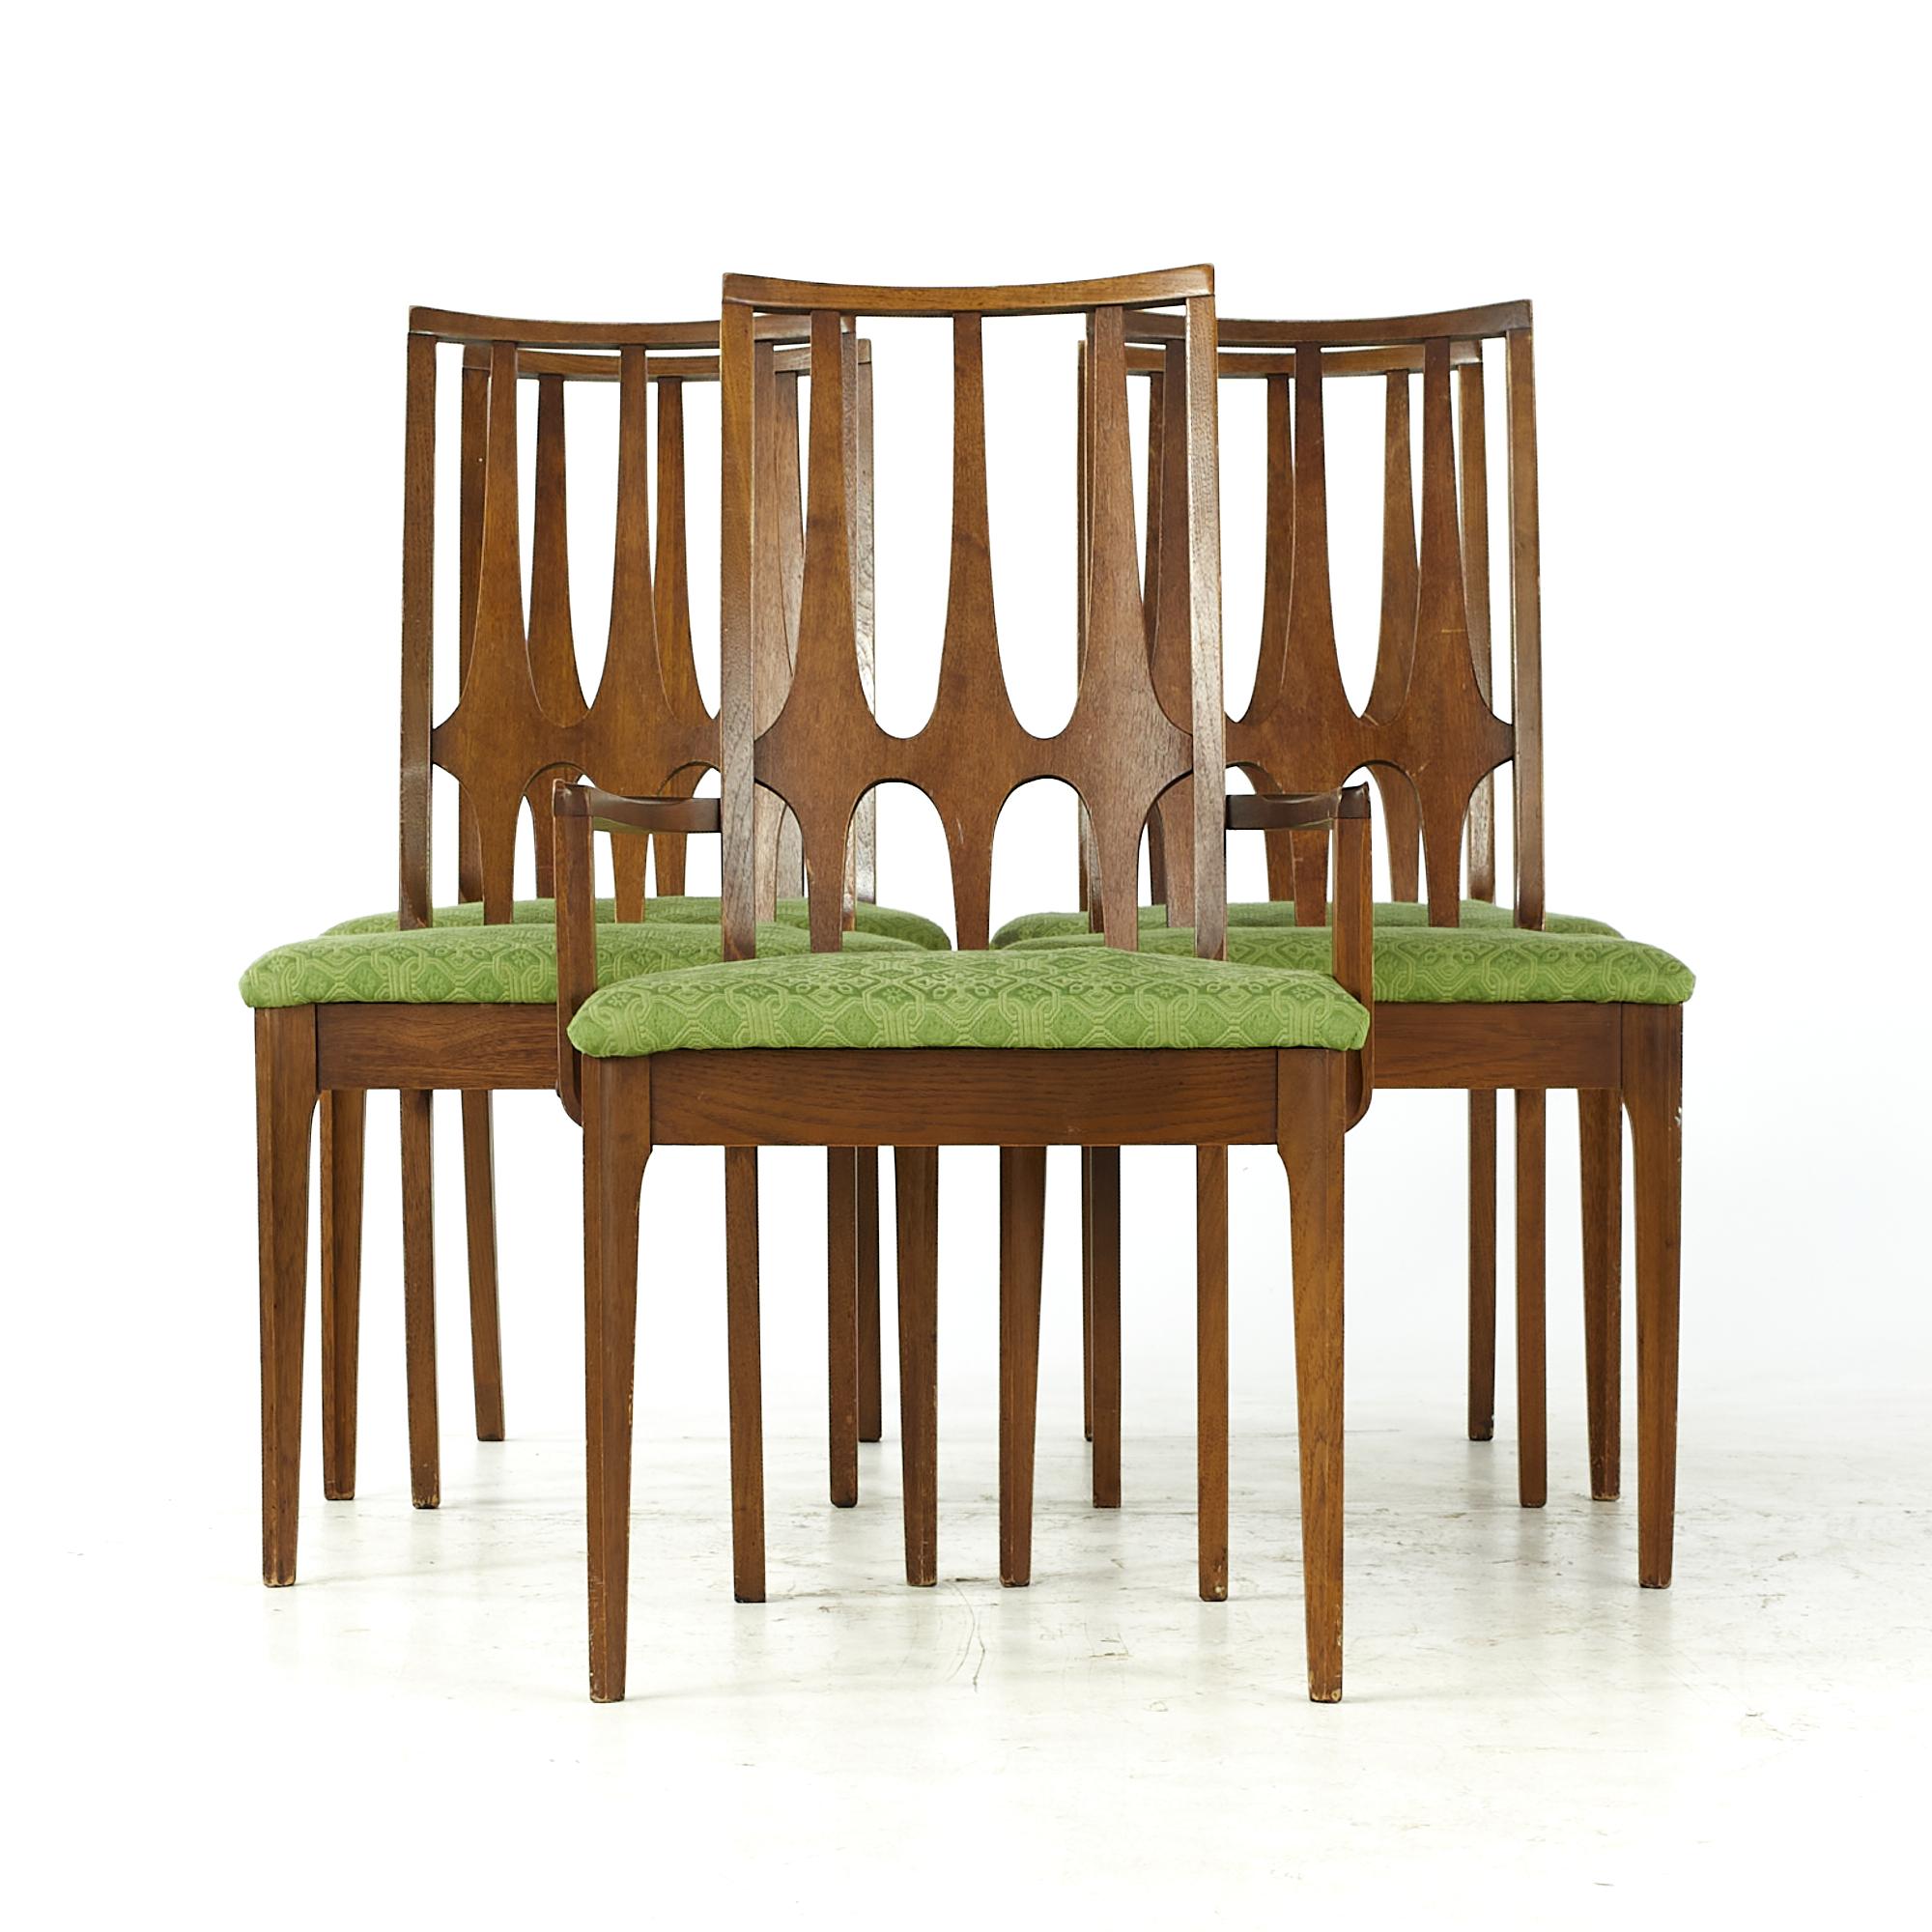 Broyhill Brasilia Mid Century Dining Chairs with 1 Captain - Set of 5

Chaque fauteuil sans accoudoir mesure : 21 de large x 20.5 de profond x 37 de haut, avec une hauteur d'assise de 19 pouces.
Le fauteuil capitaine mesure : 21 de large x 20.5 de